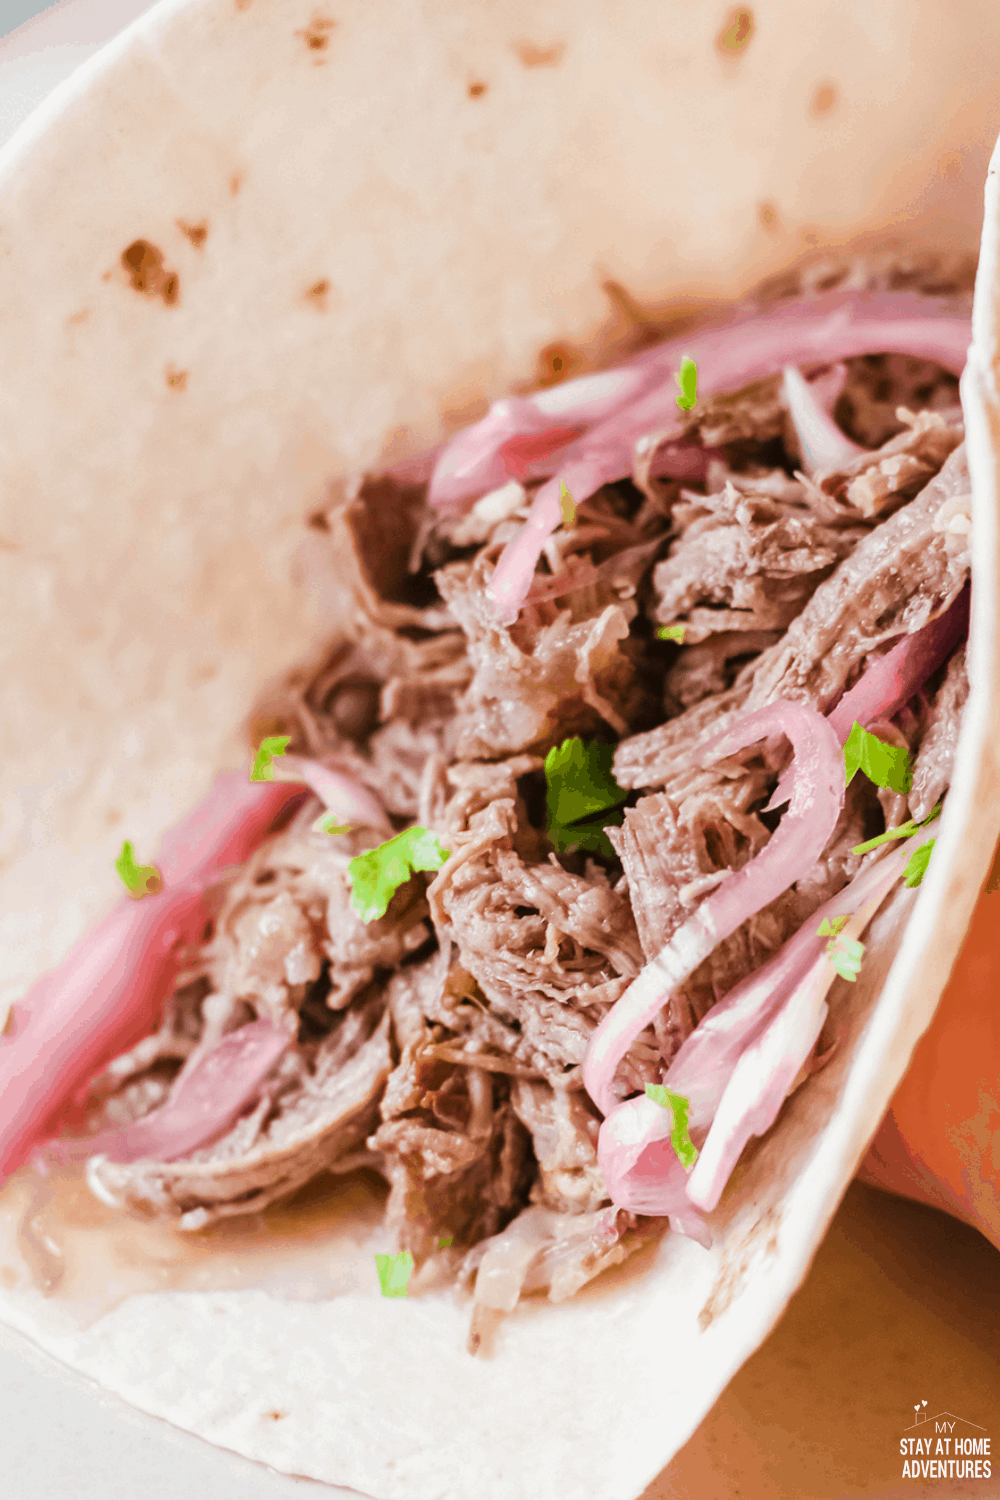  strimlad nötkött tacos (tacos De Carne Deshebrada) är ömma, smakrika, fantastiska tacos som din familj kommer att be om gång på gång. #tacos #tacosdeshebrada # shreddedbeeftacos #tacotuesday via @mystayathome